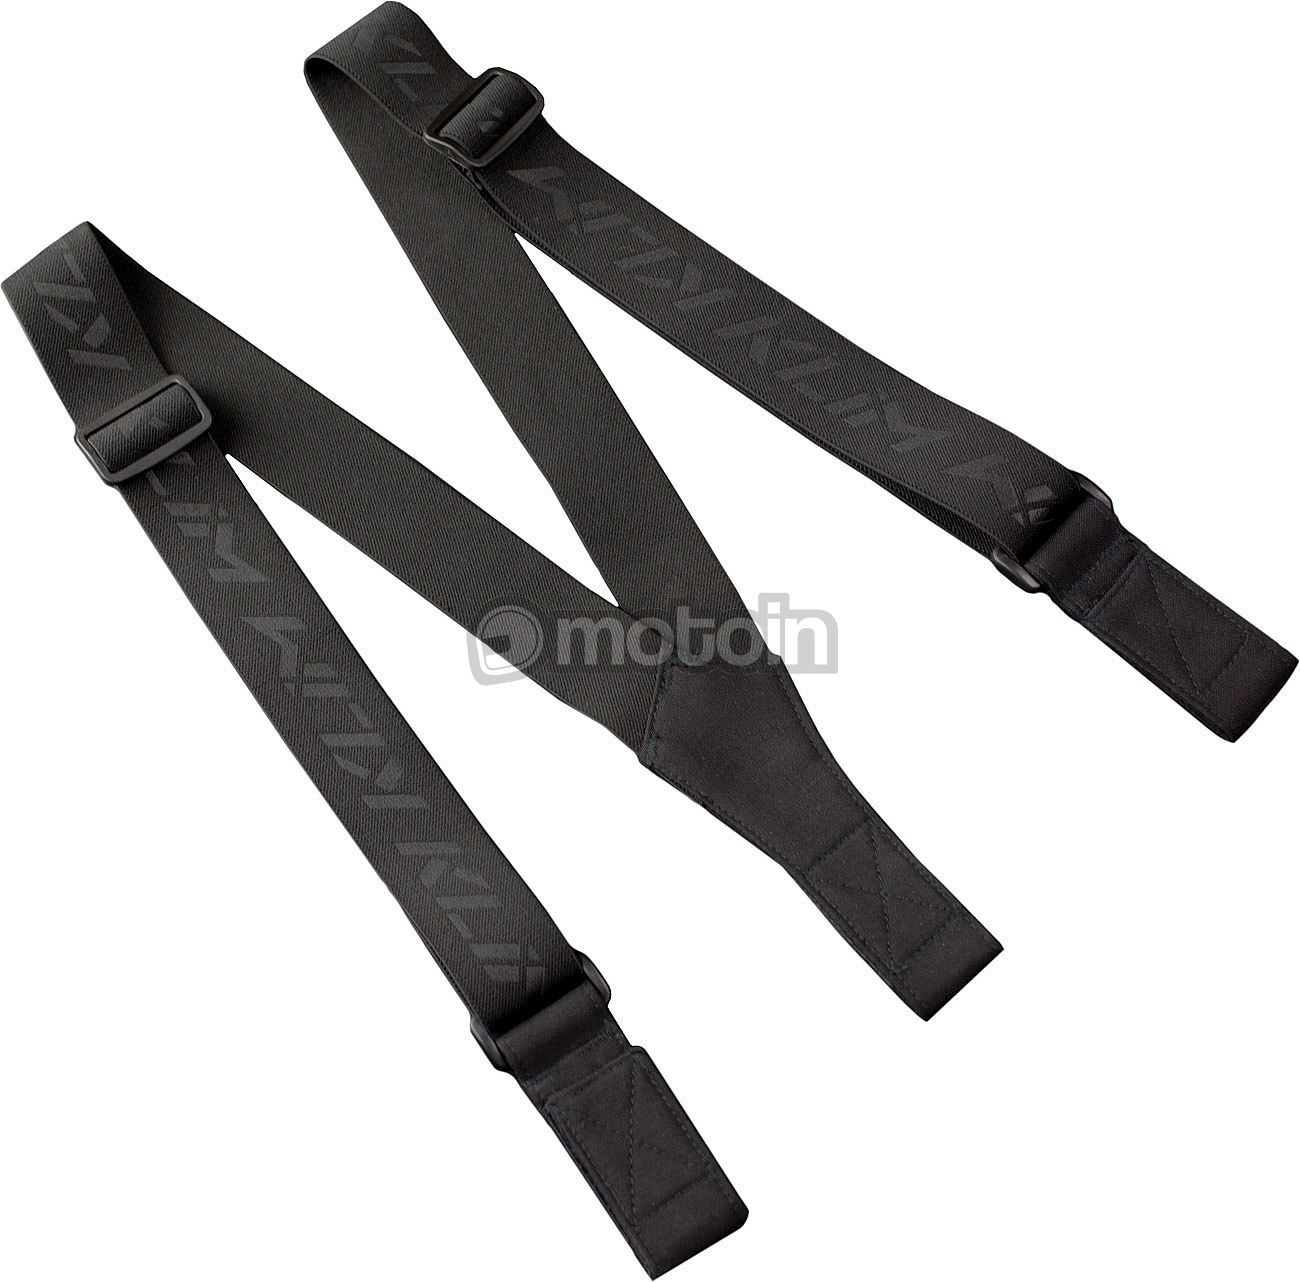 Klim 5049-001, suspenders